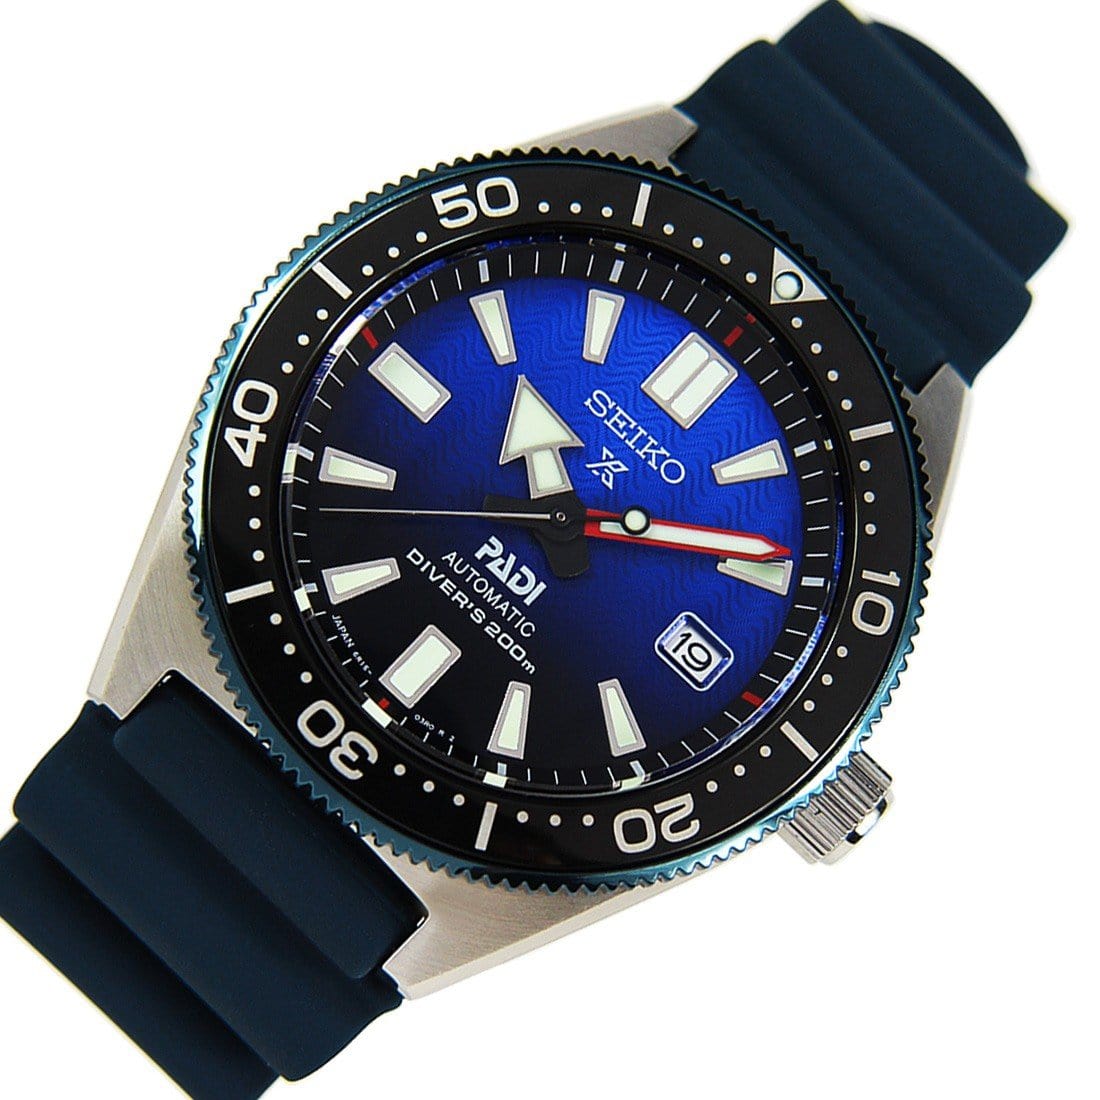 Seiko PADI Prospex Japan Dive Watch SBDC055 SBDC055J1